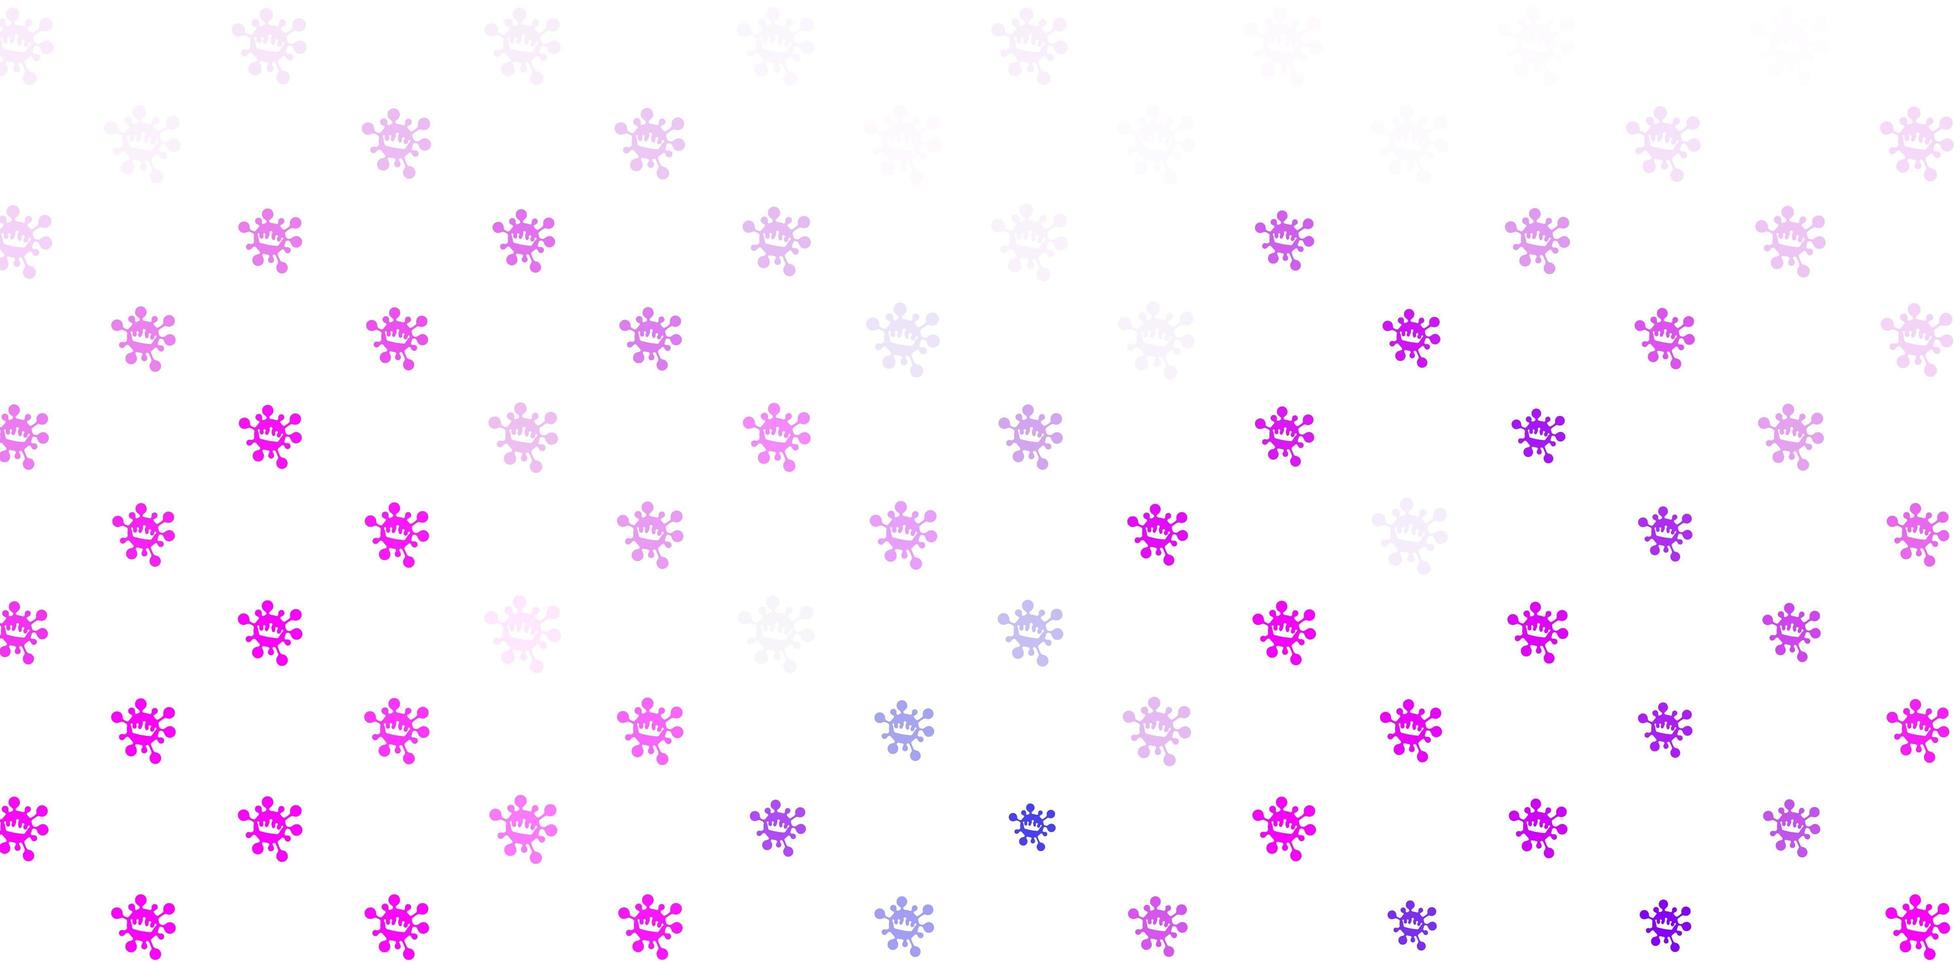 sfondo vettoriale rosa chiaro, blu con simboli di virus.